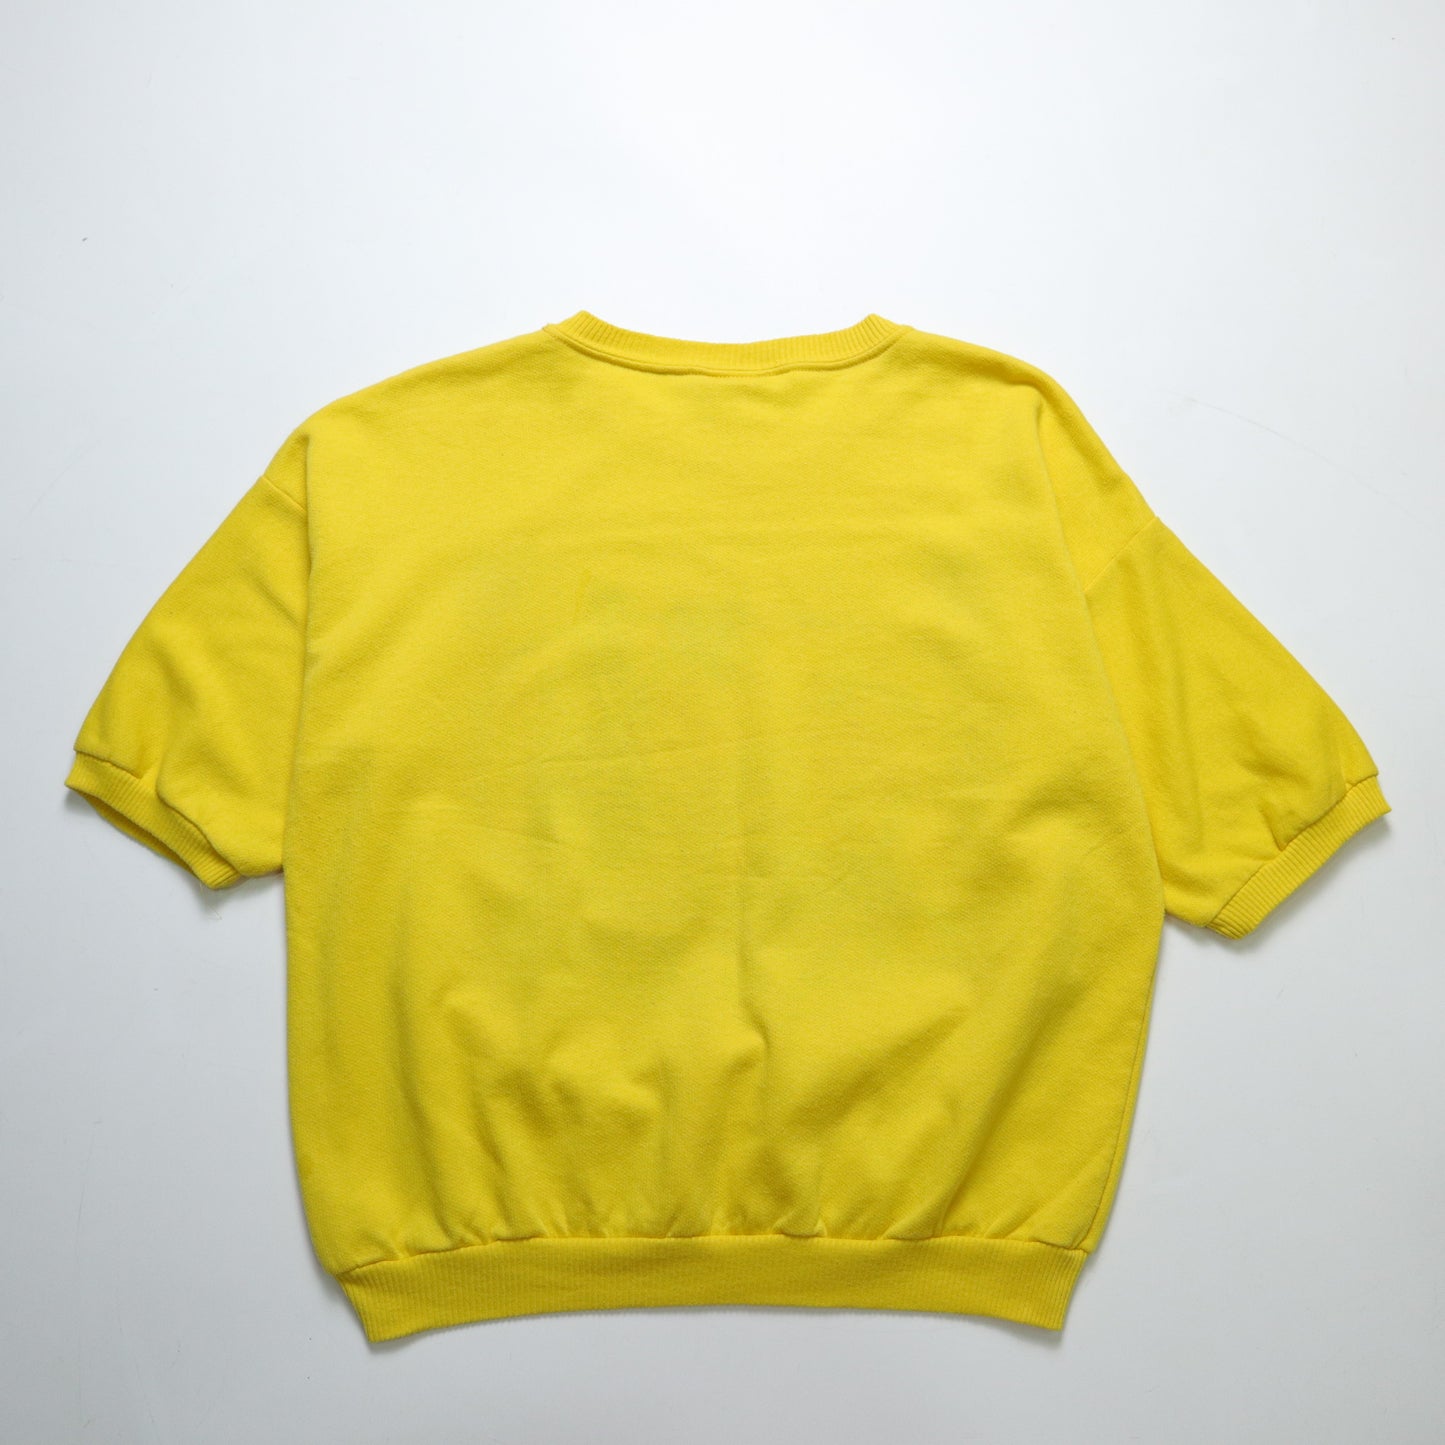 1980s Swine Coolers Sweatshirt made in the United States, piggy yellow short-sleeved sweatshirt